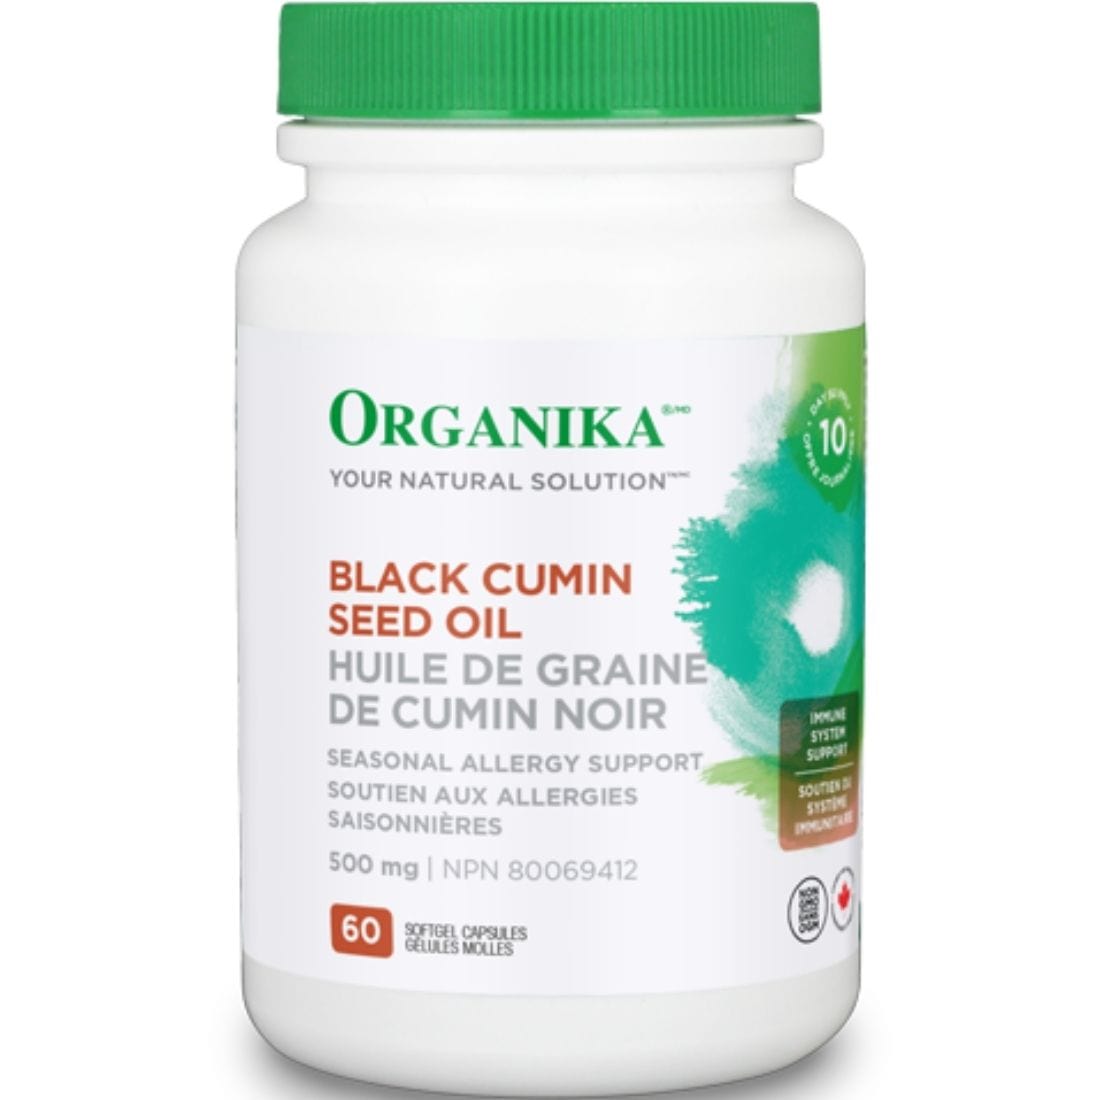 Organika Black Cumin Seed Oil, 500mg